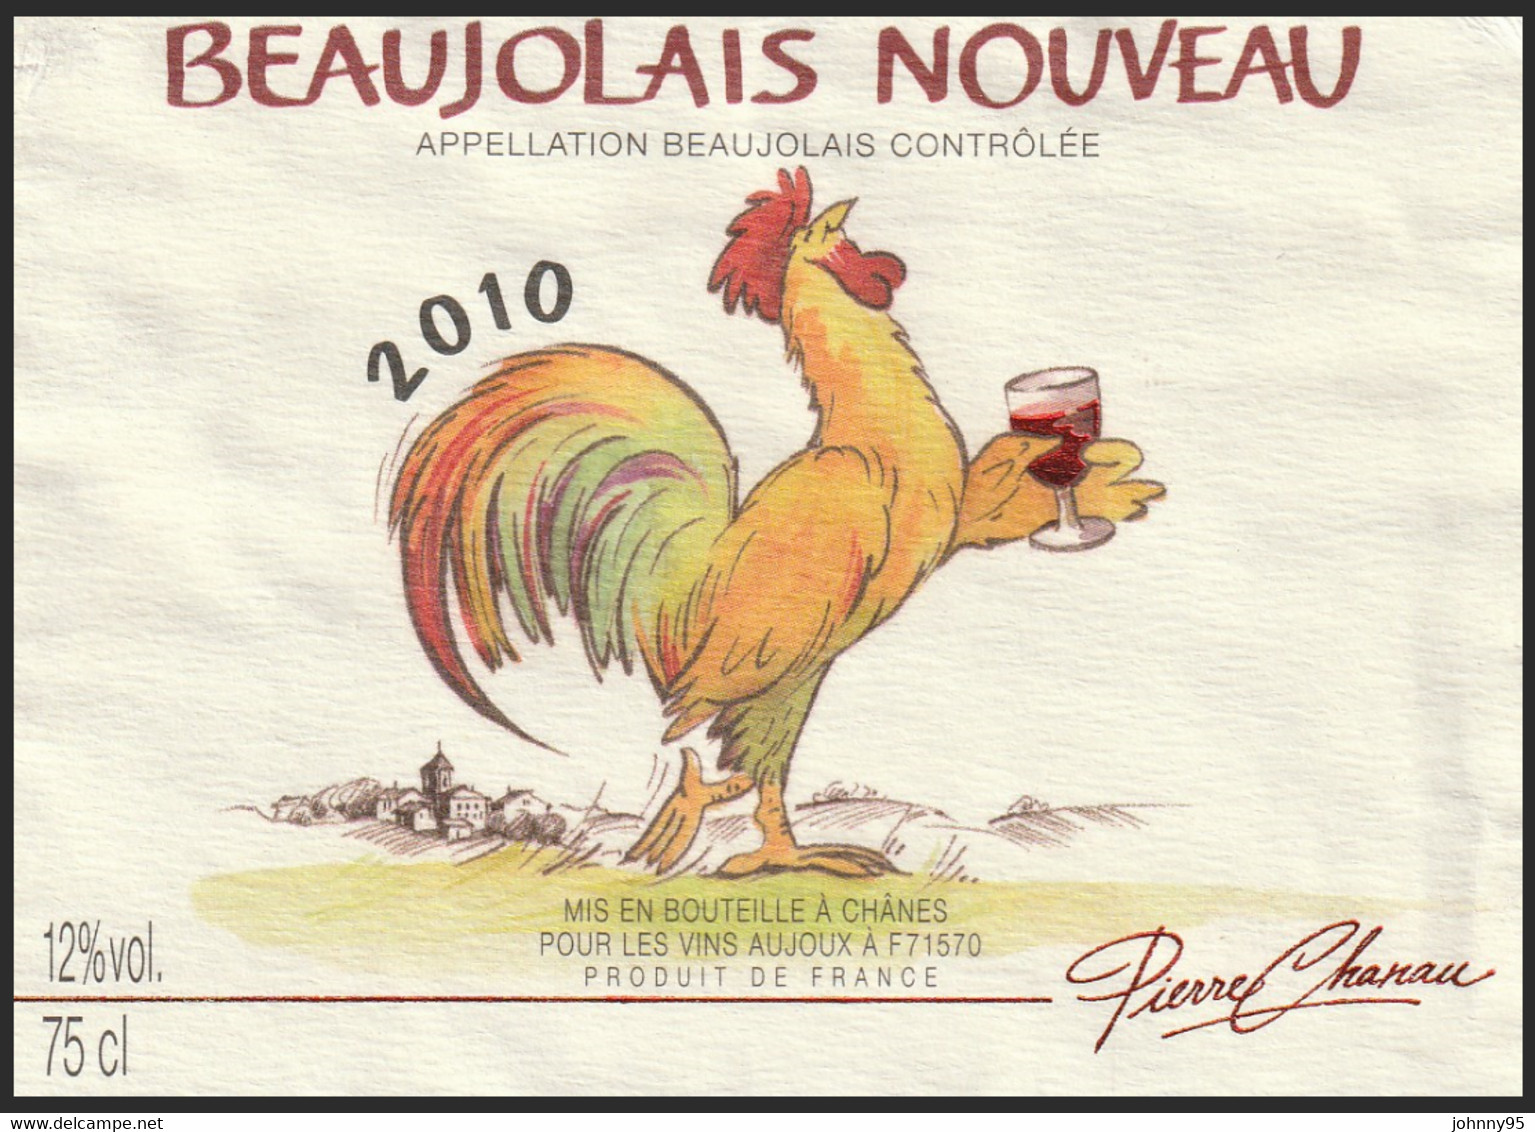 Coq Sur étiquette De Vin - Beaujolais Nouveau 2010 Pierre Chanau - Vins Aujoux : Chânes Saône Et Loire - Roosters